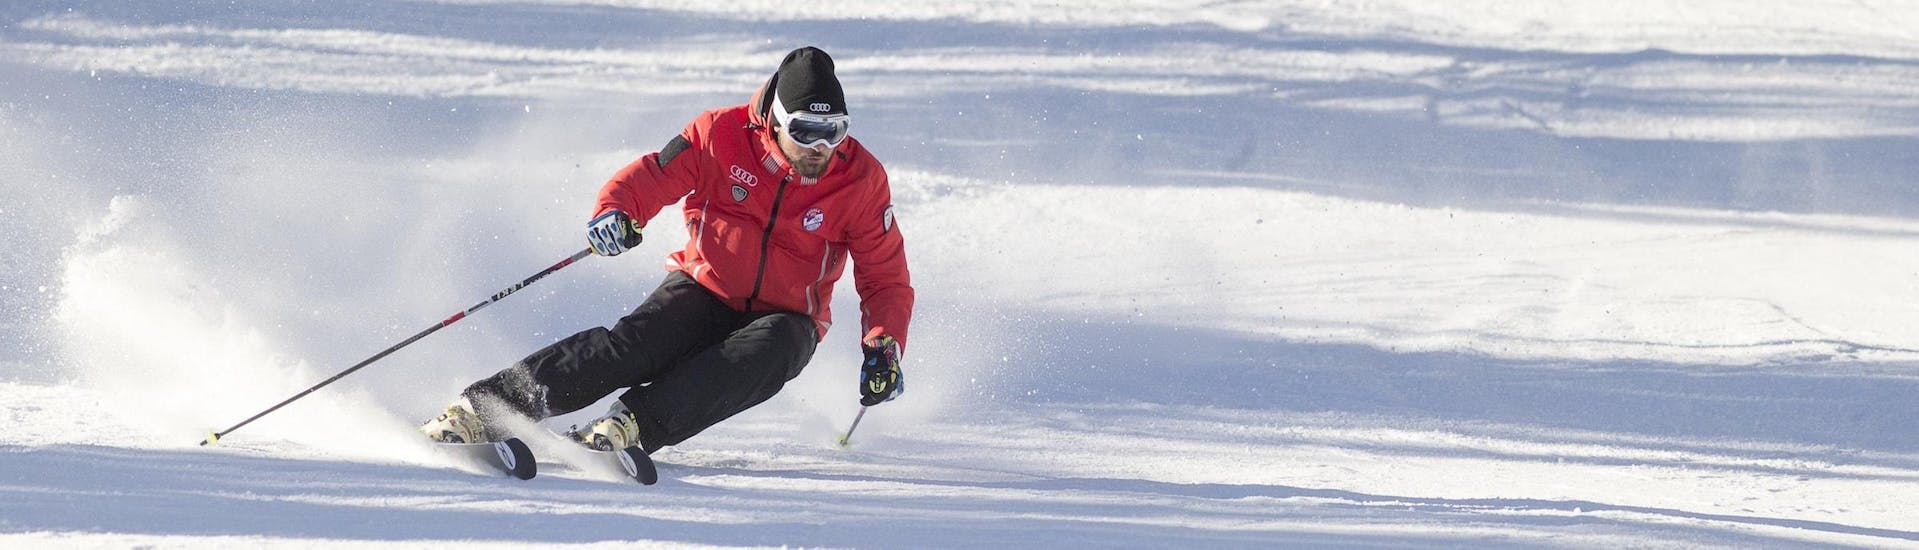 Un istruttore di sci della scuola di sci Scuola Sci Cortina sta mostrando la giusta tecnica di sci durante una delle lezioni private di sci per adulti - tutti i livelli nel comprensorio sciistico di Cortina d'Ampezzo.